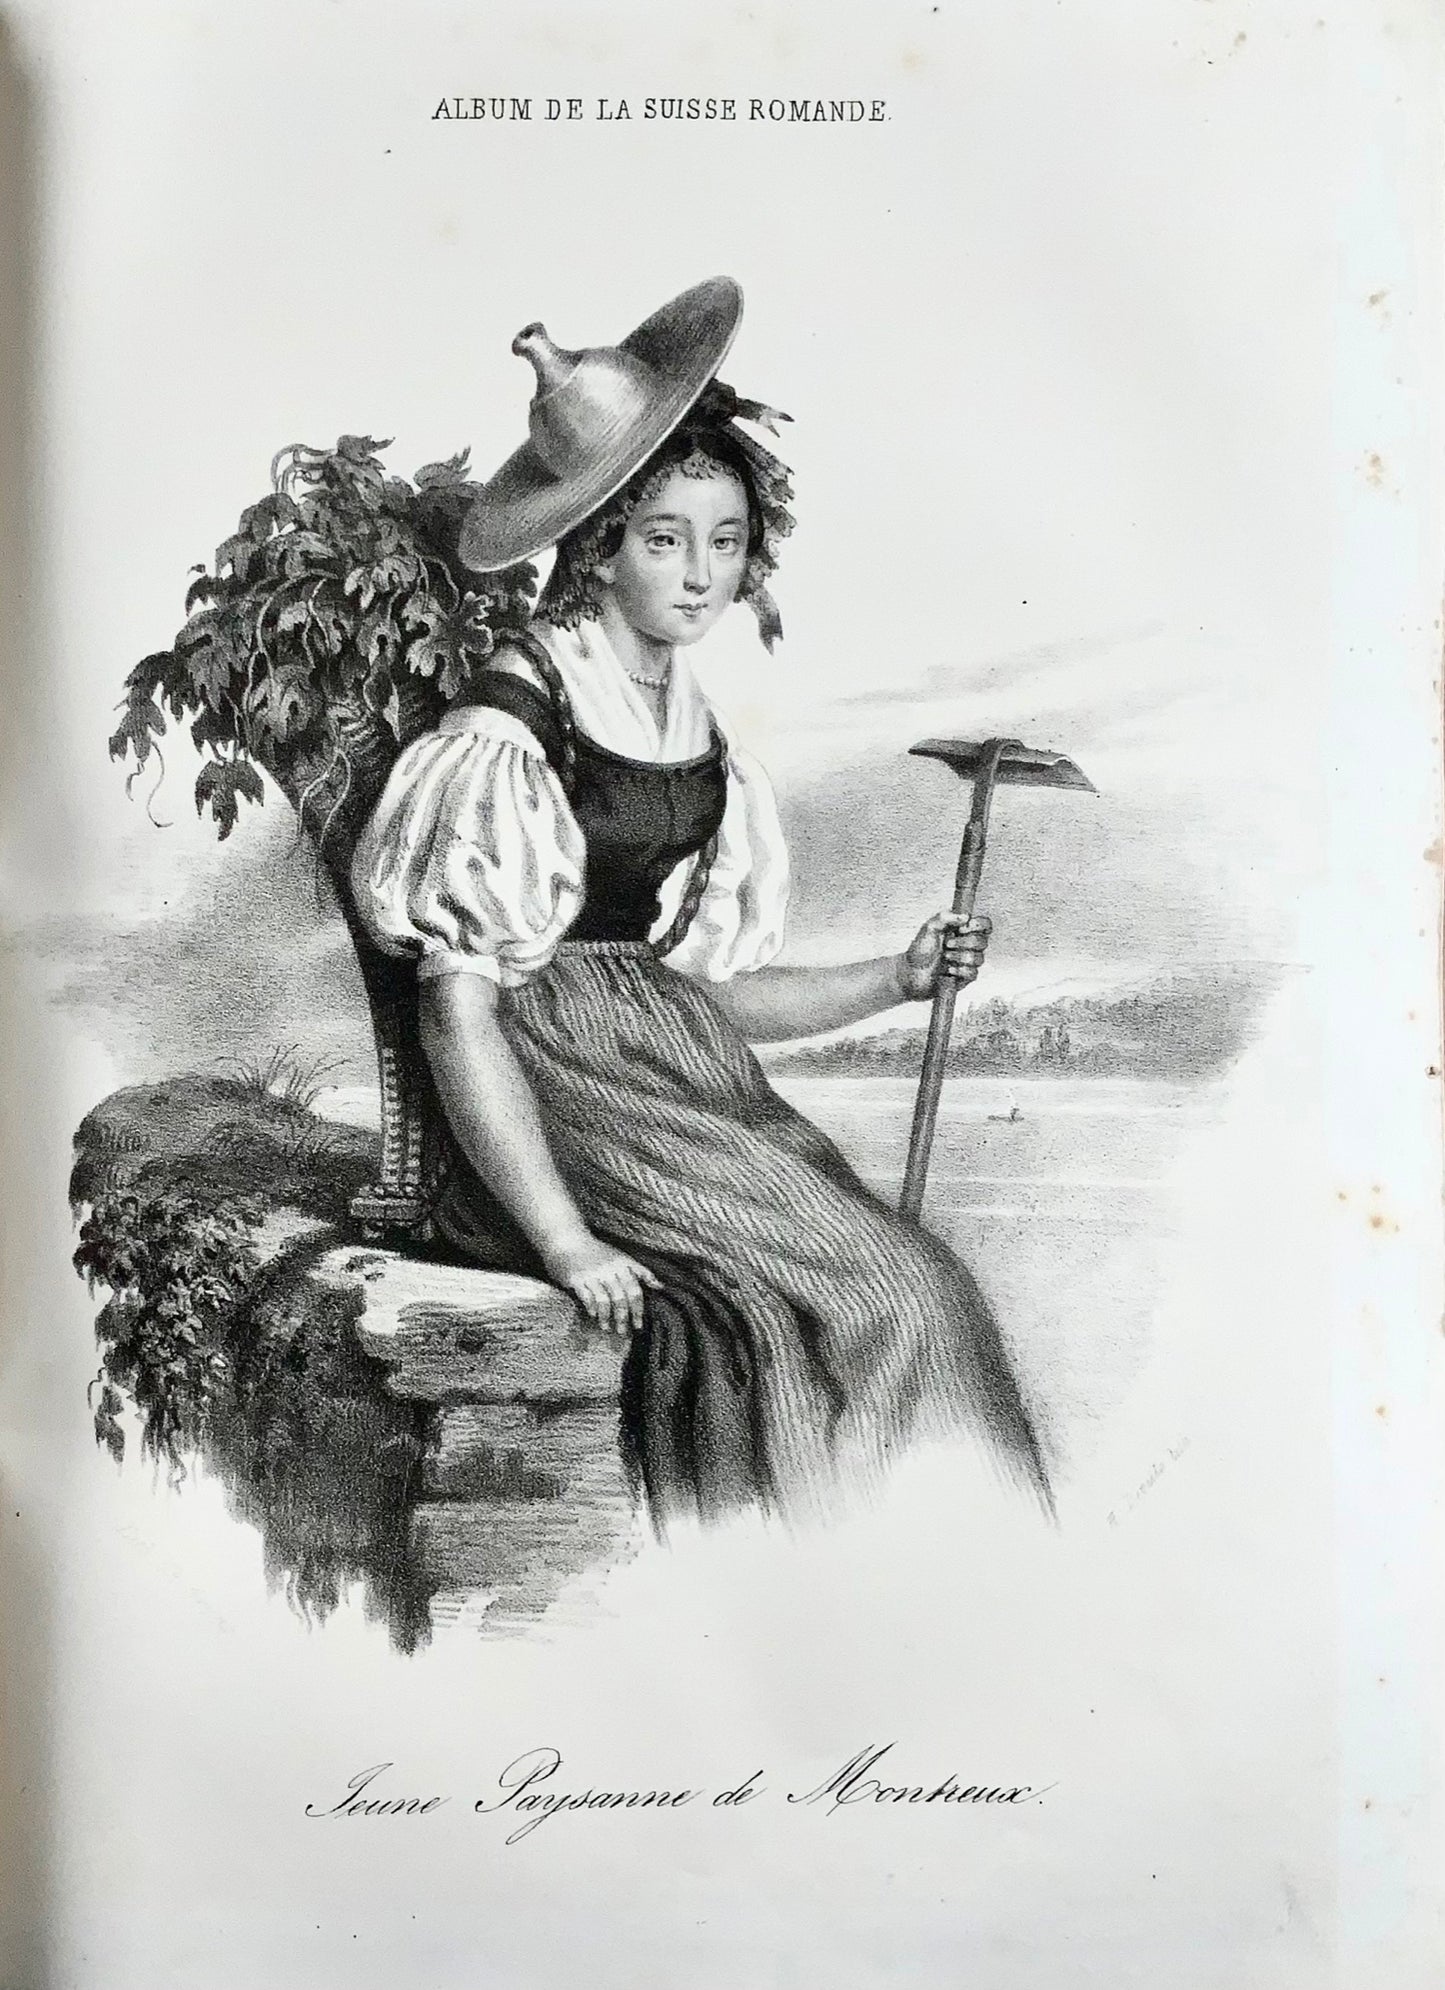 1843-4 [Periodical] Album de la Suisse Romande, 46 fine plates, Switzerland, book